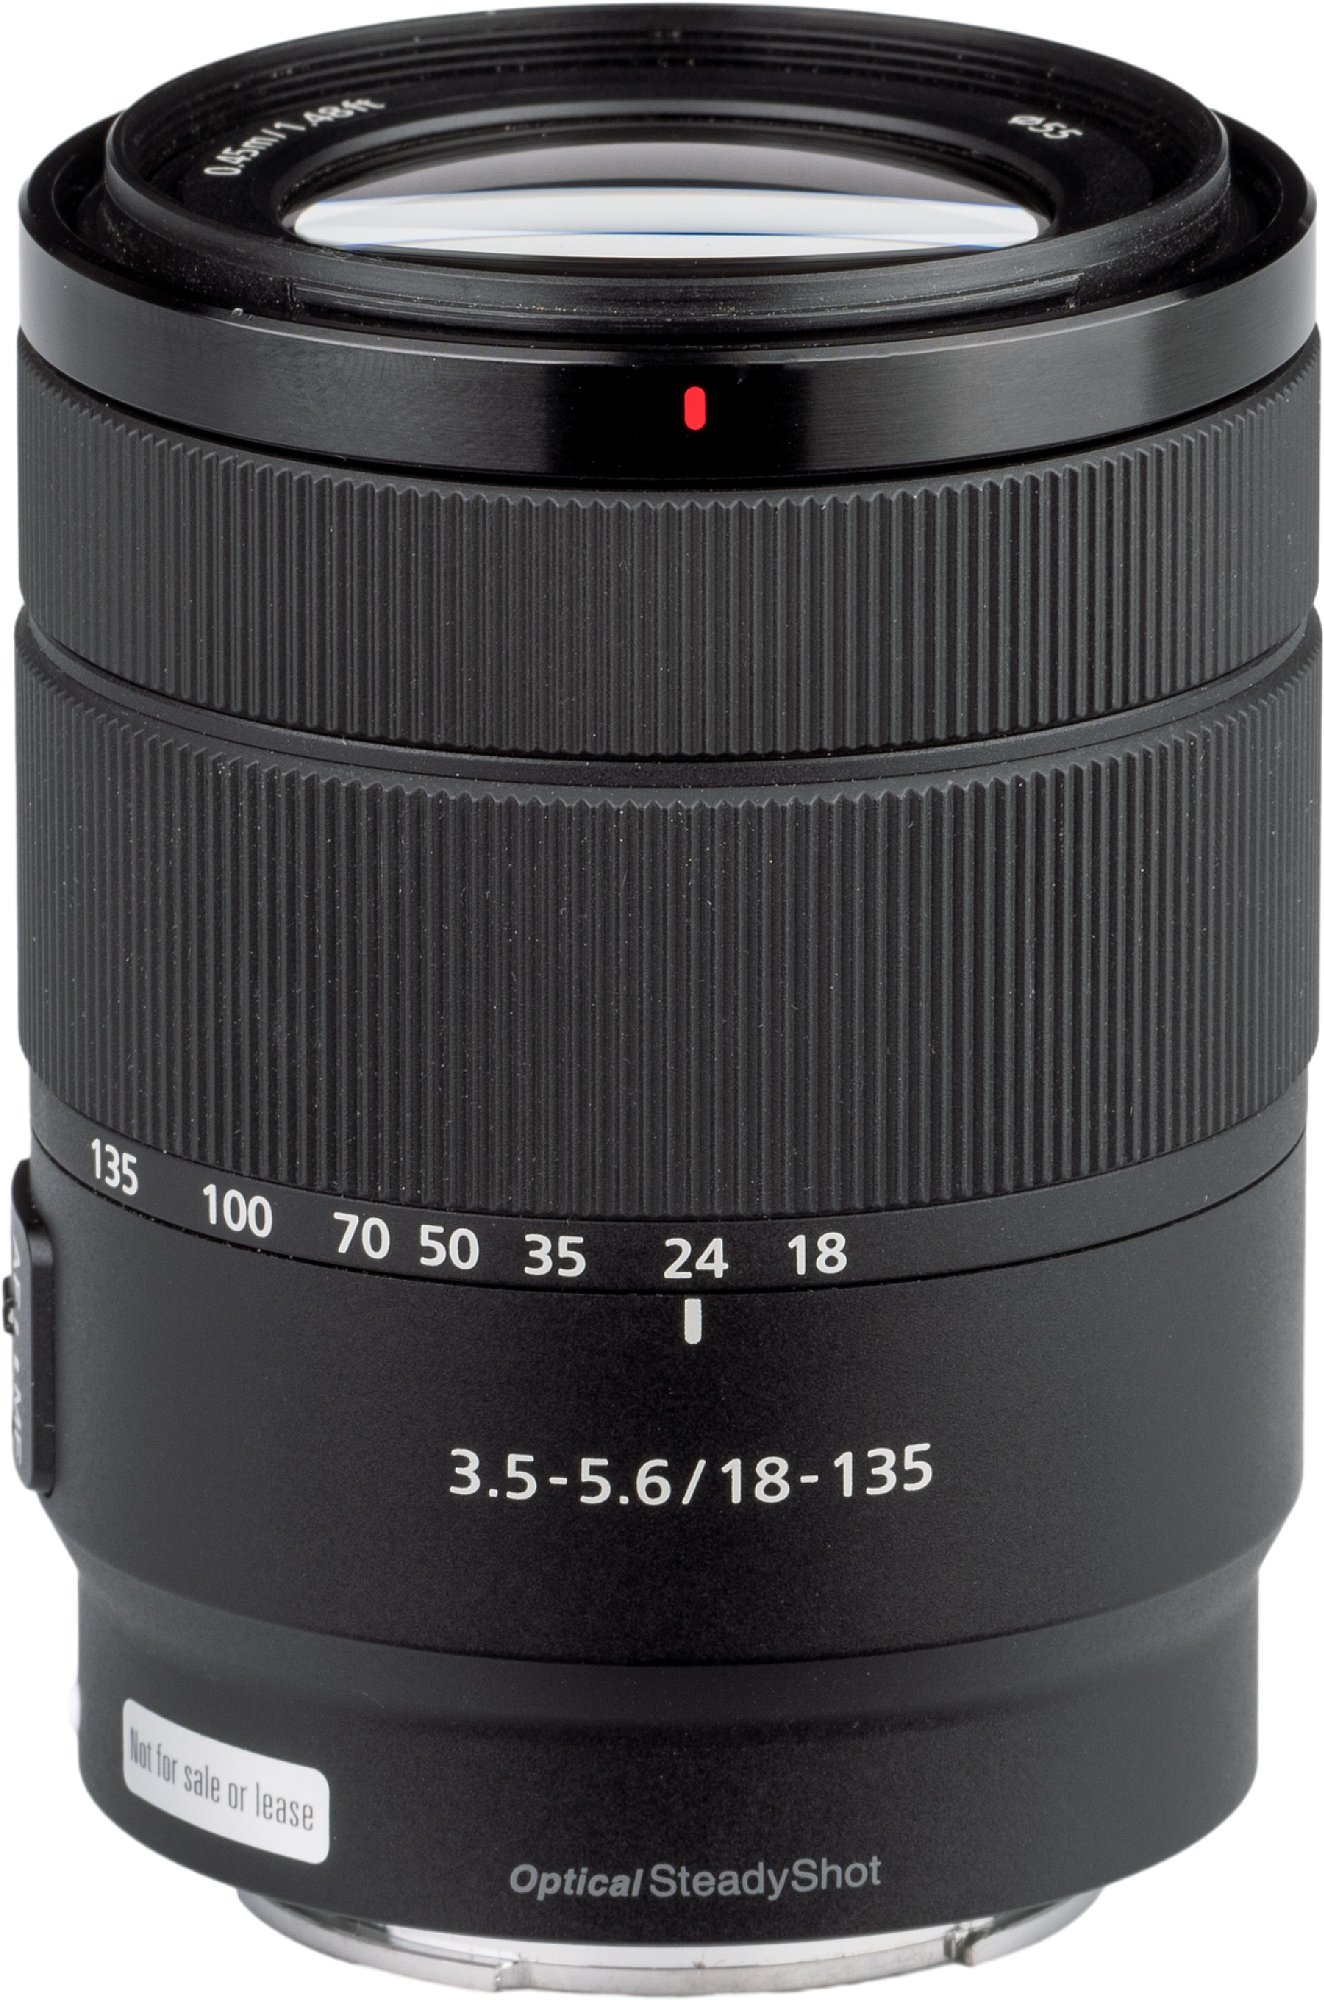 [Weiterhin beliebt] Sony E 18-135 - im F3.5-5.6 - digitalkamera.de Test OSS Zubehör-Tests mm